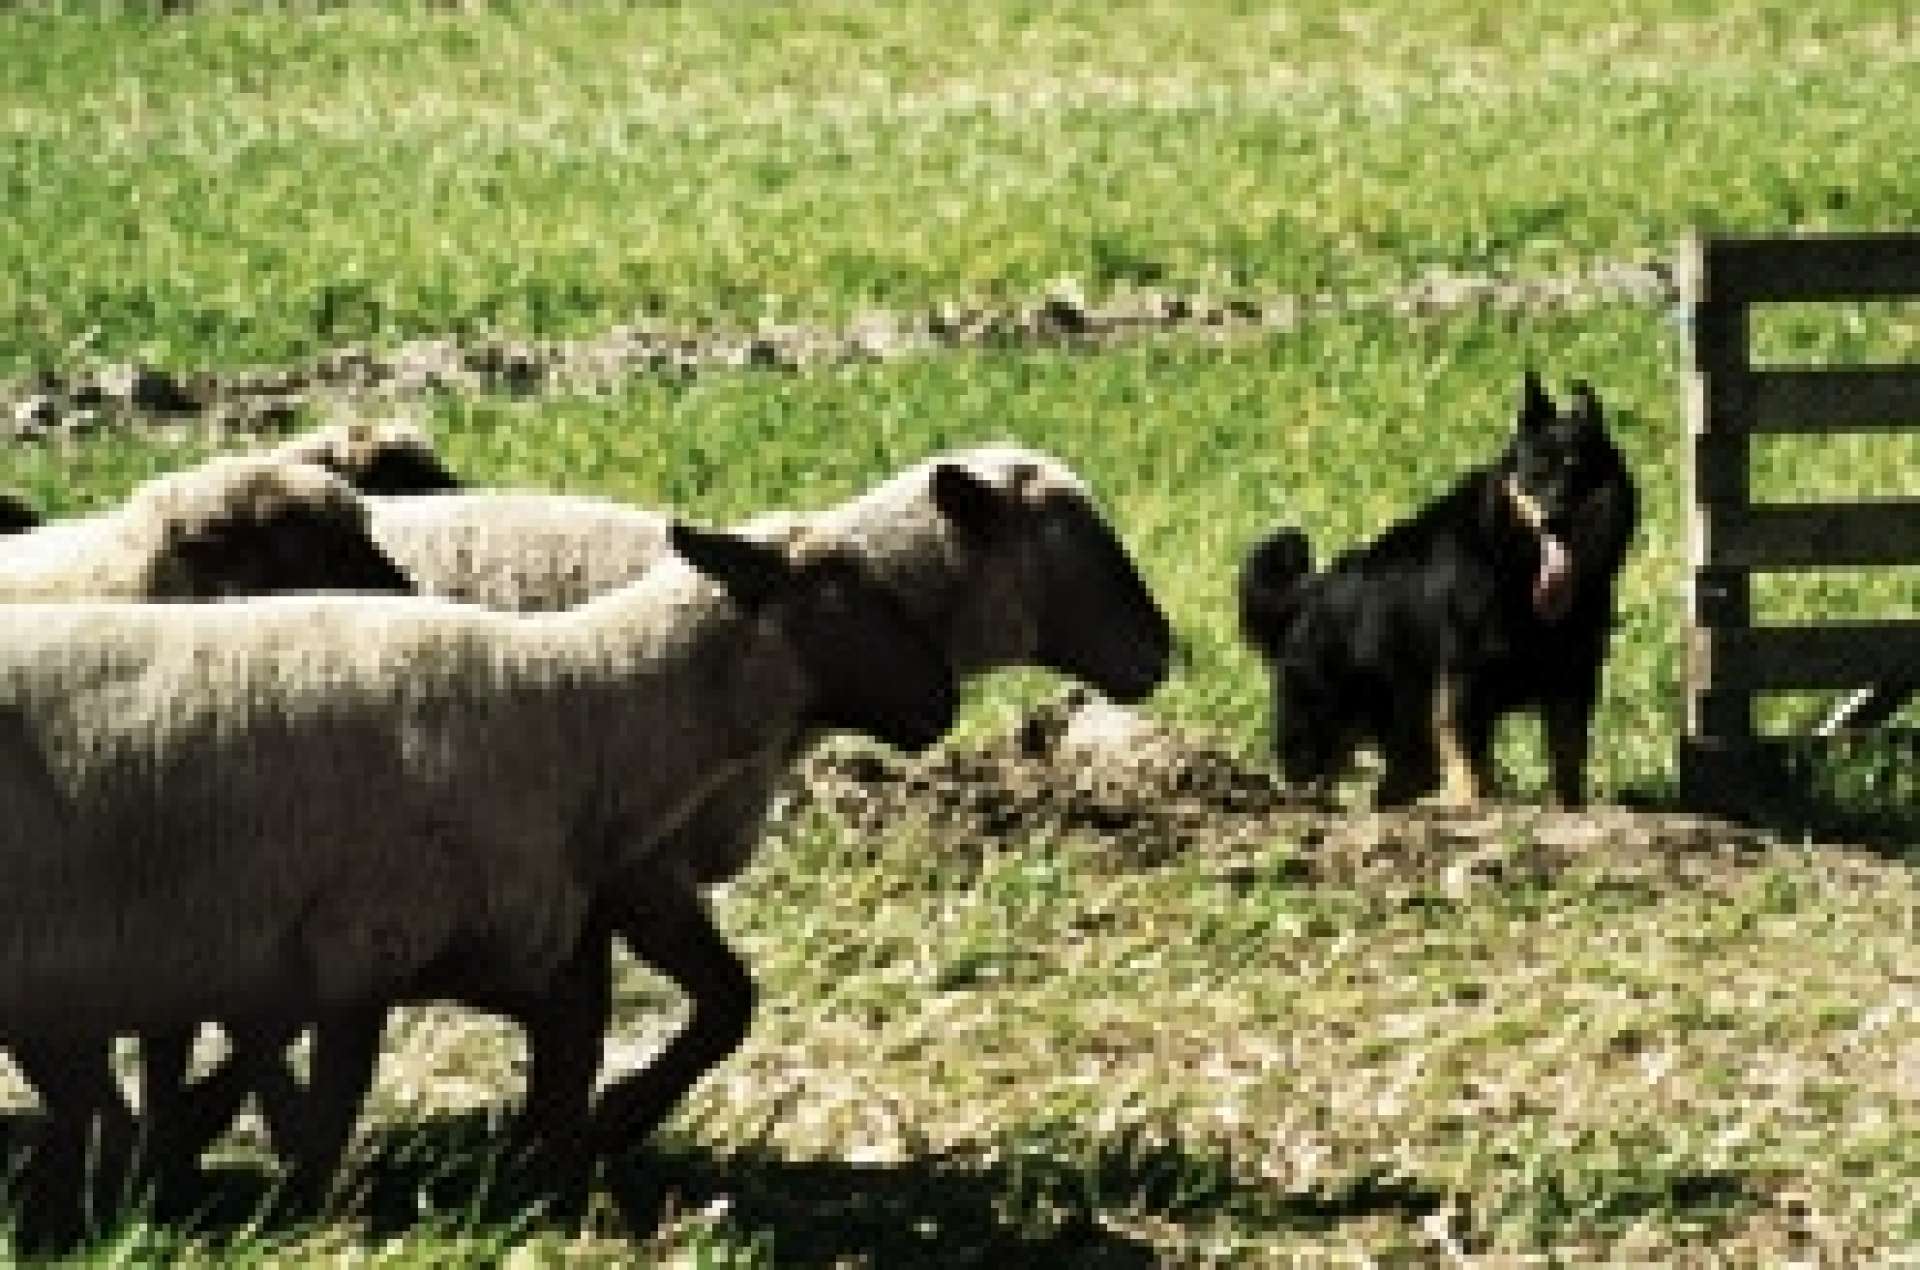 Beim Einpferchen der Schafherde, Gelbbacke wehrt am Pferch